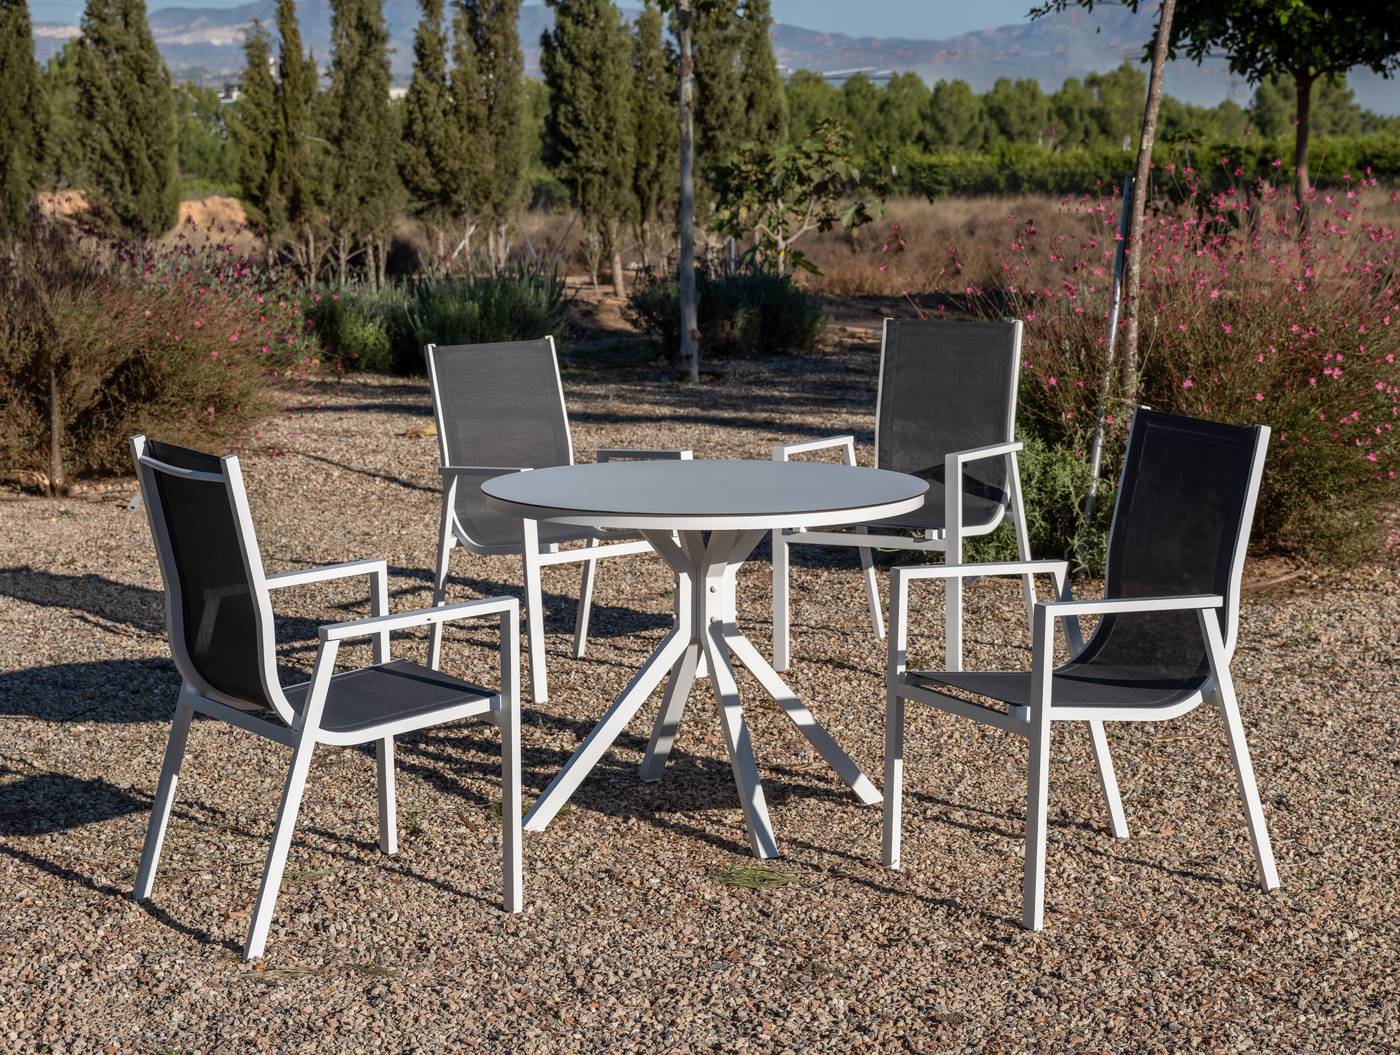 Conjunto aluminio: mesa redonda de 100 cm con tablero HPL + 4 sillones de alumino y textilen. Colores: blanco o antracita.